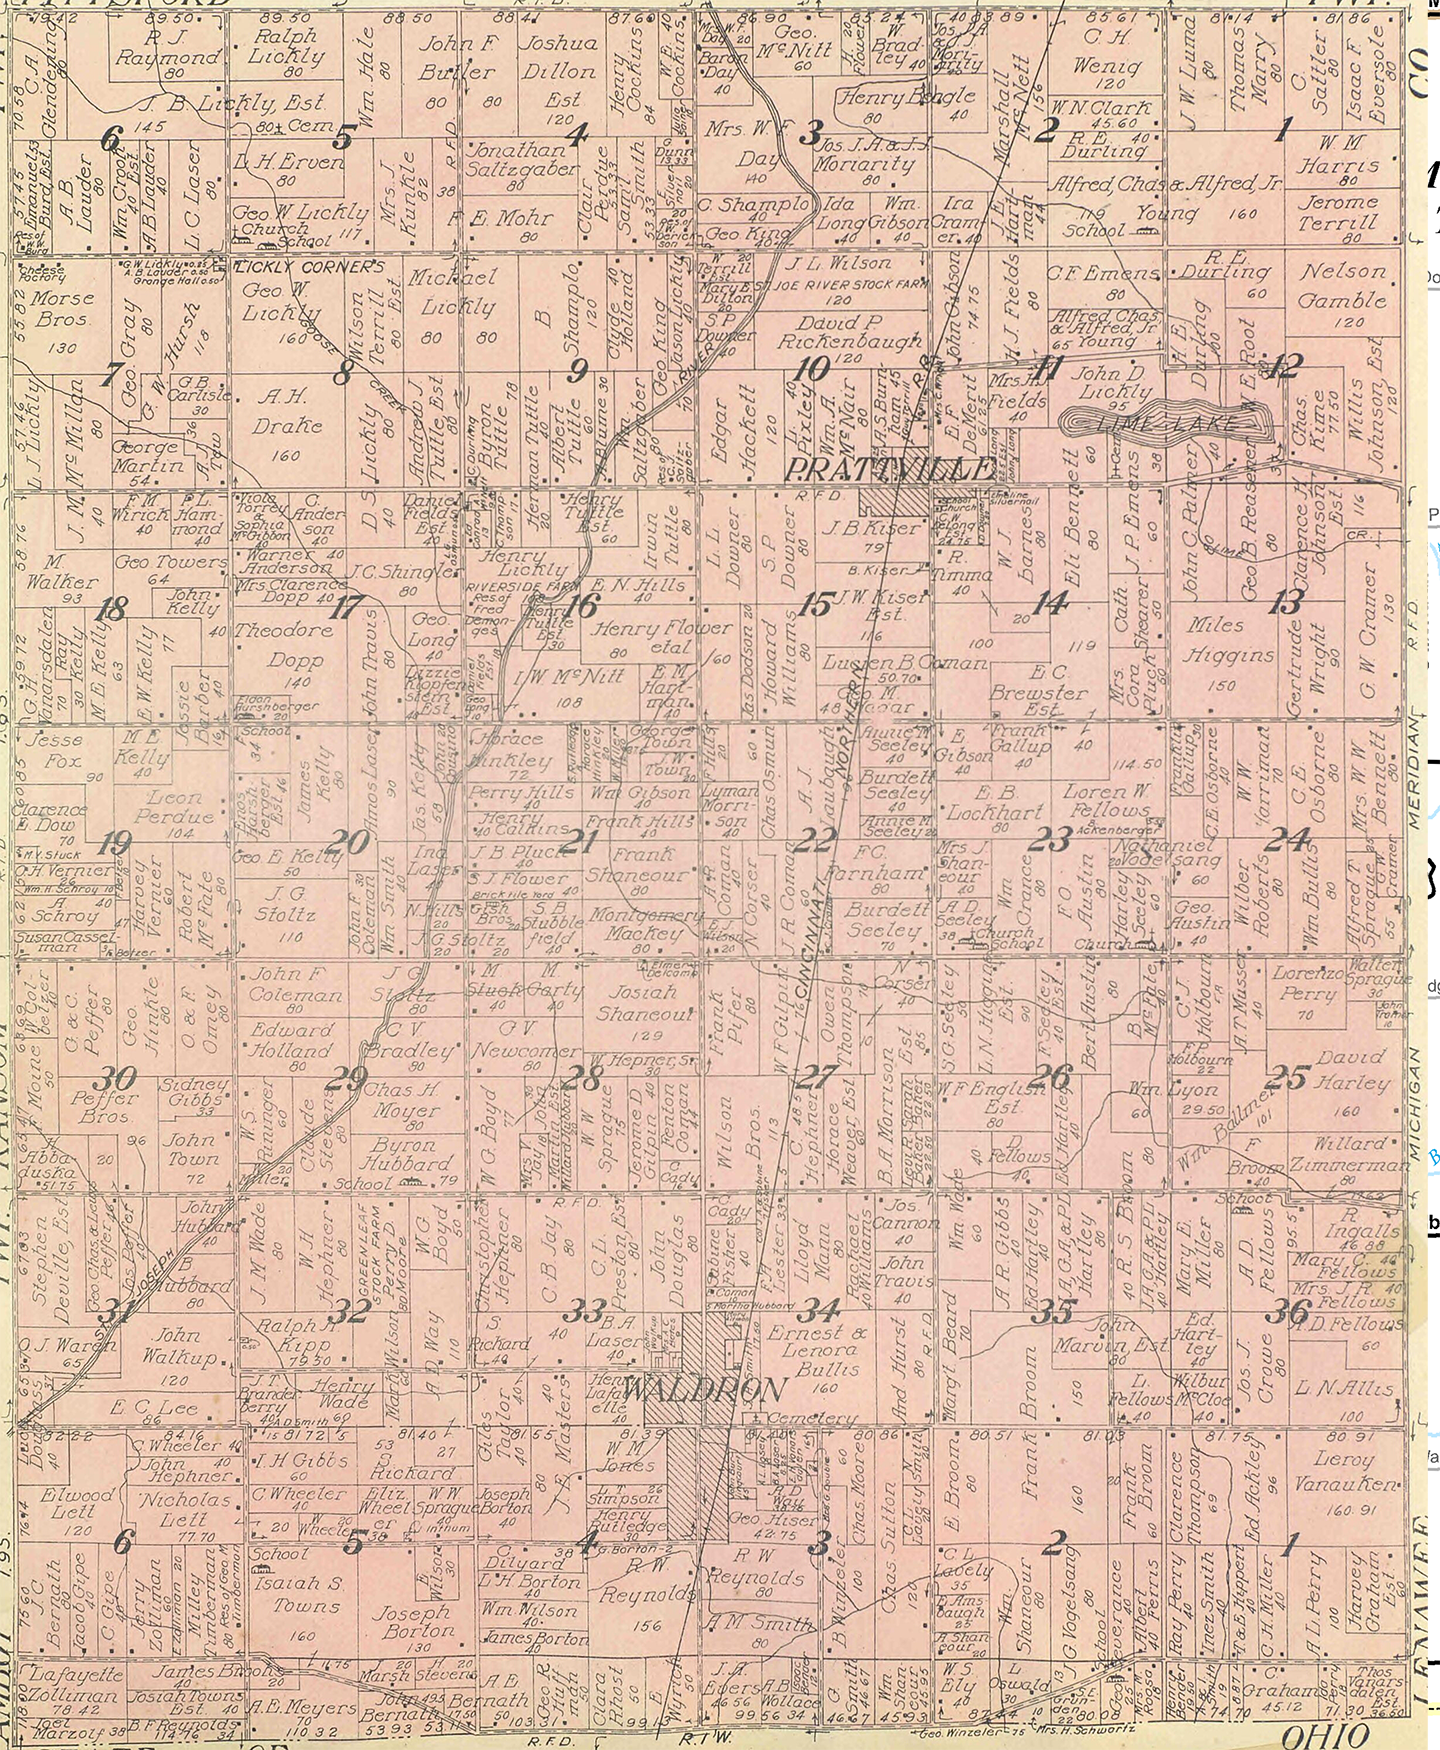 1916 Wright Township, Michigan landownership map